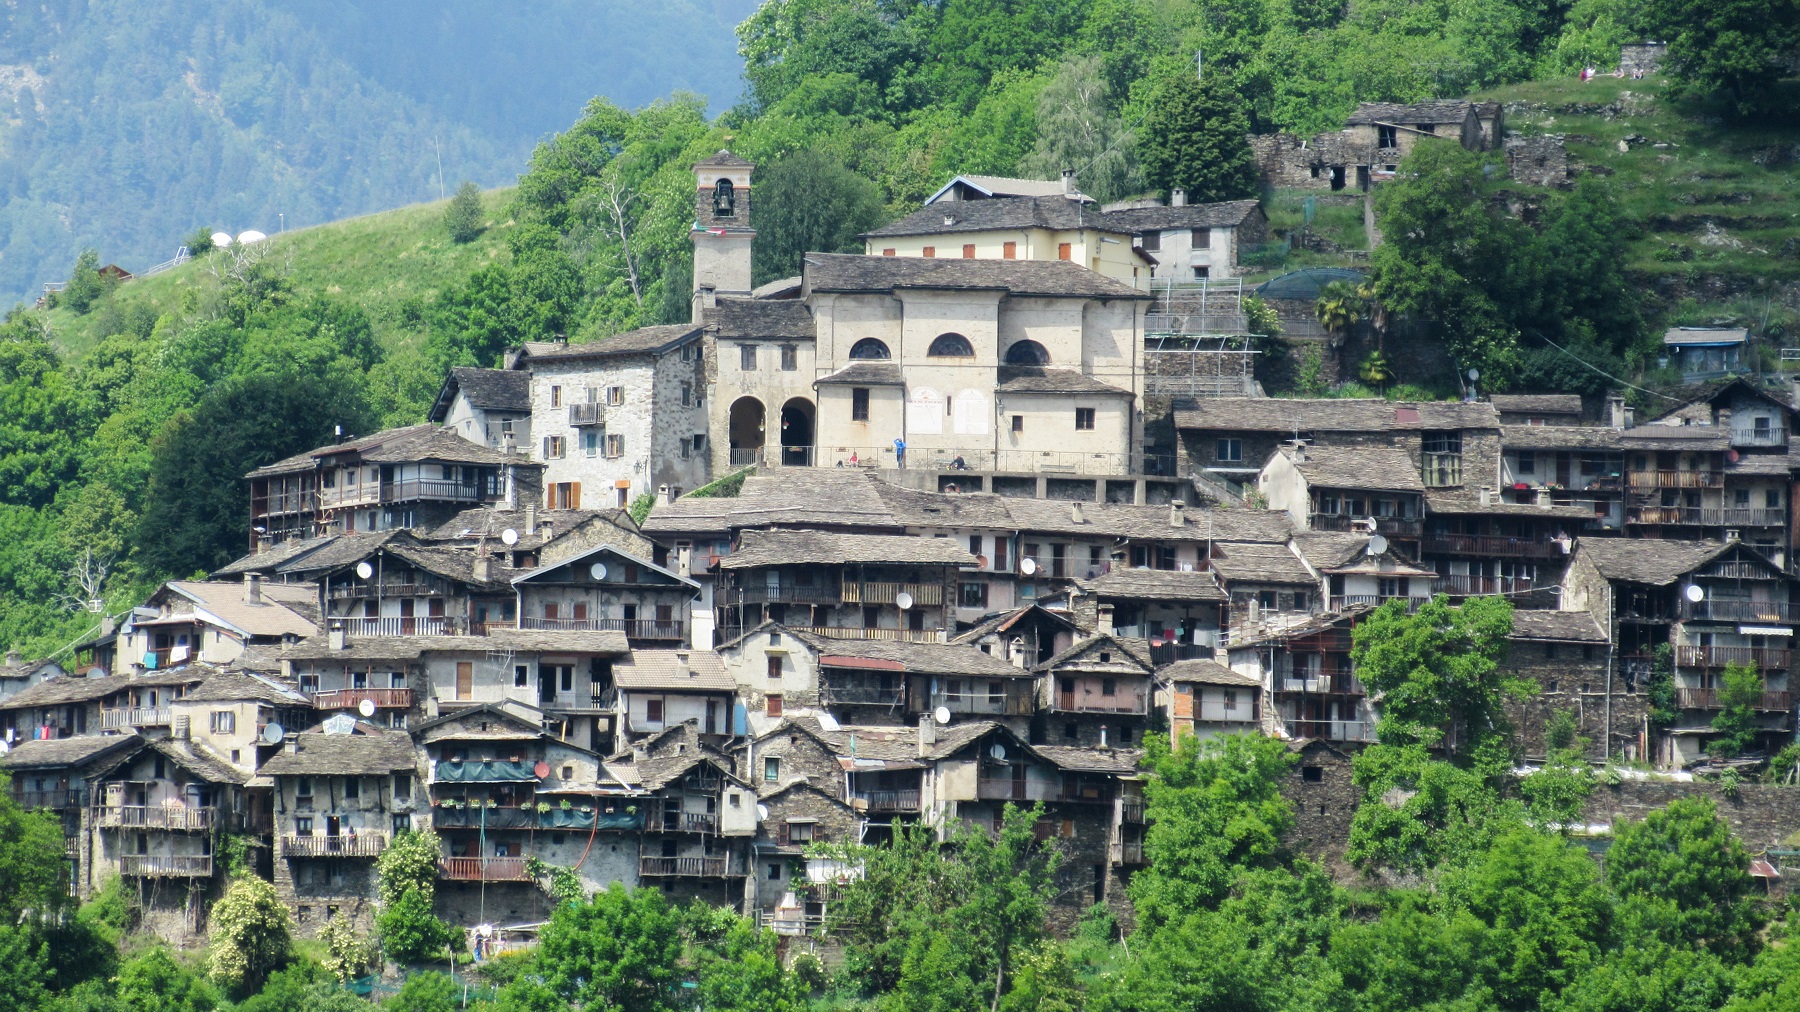 Odsječeni od ostatka Italije selo Monteviasco u Lombardiji kuće nakrcane jedna na drugu u brdu okolo drveće zeleno kuće sa sivim krovom djeluju staro vedar dan